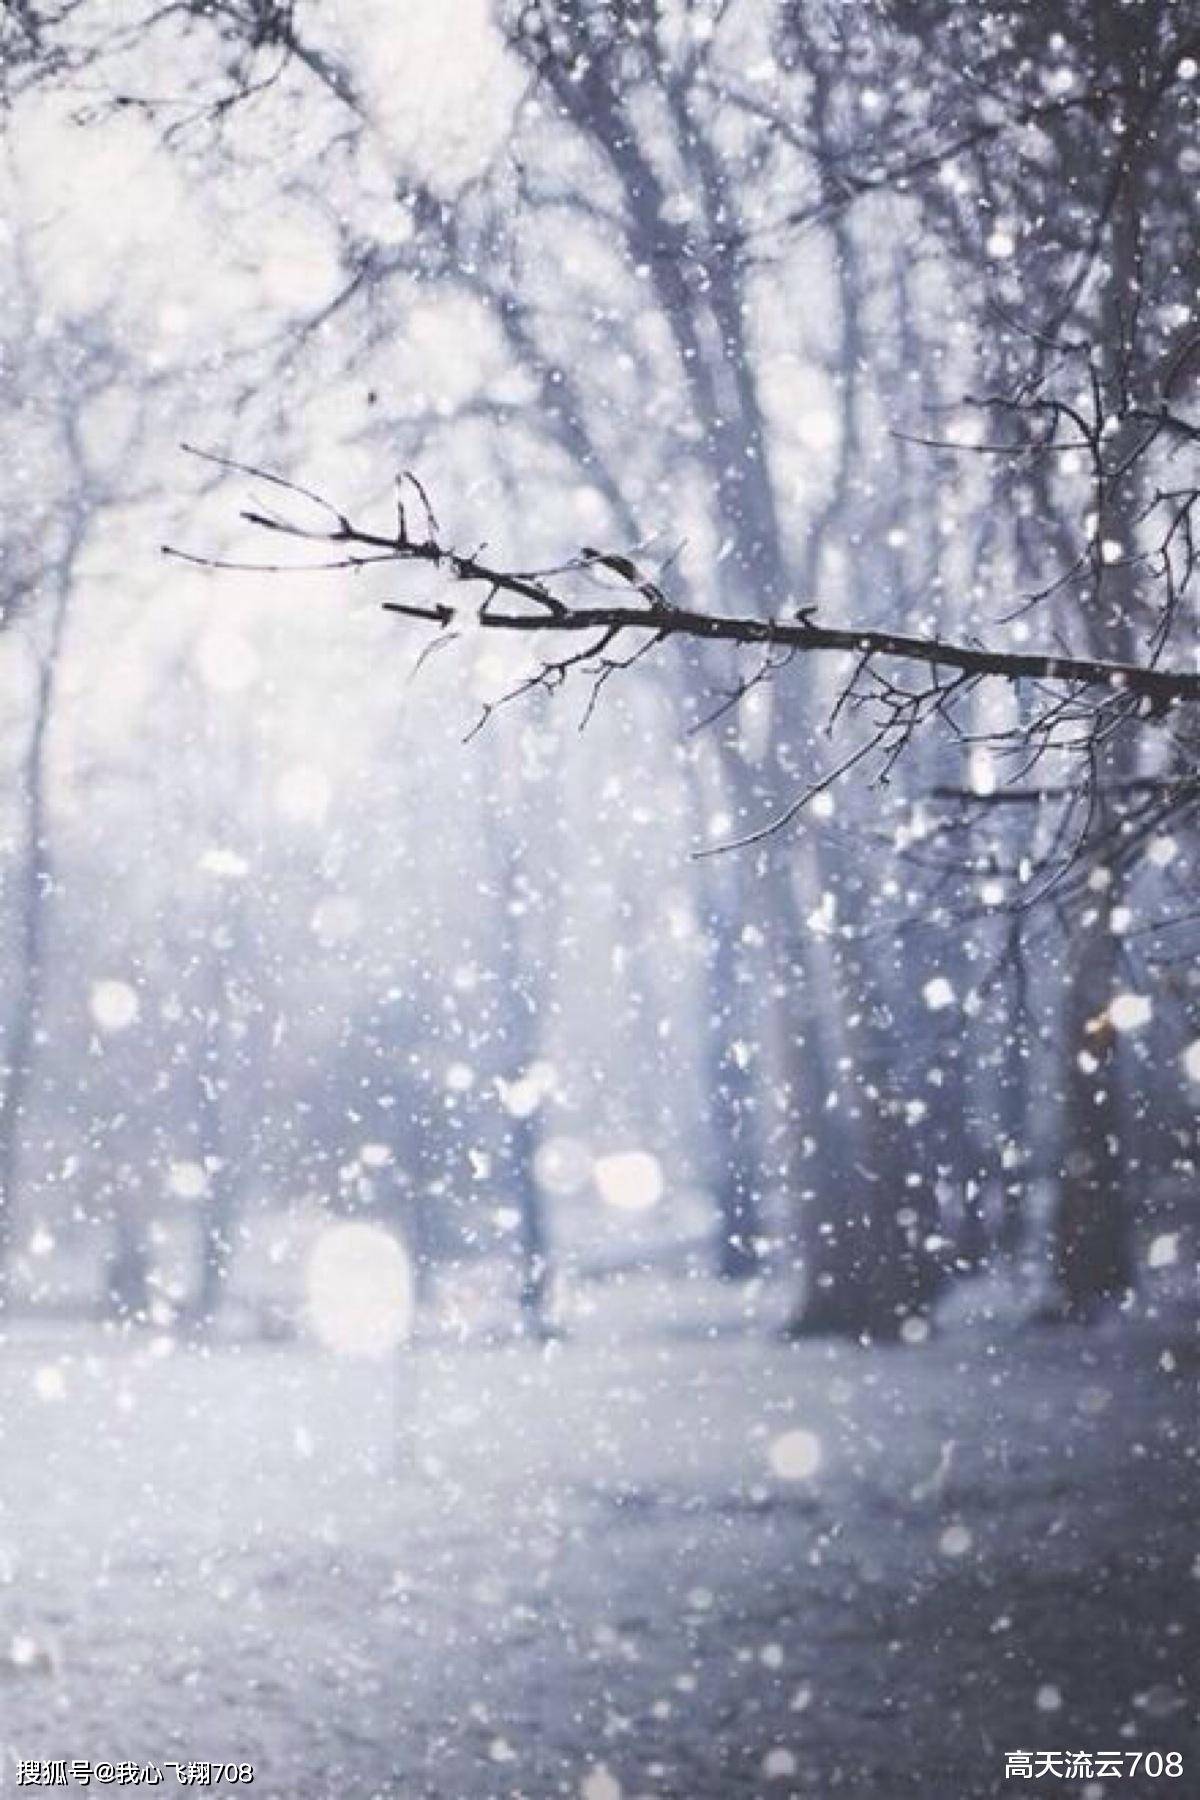 雪花世界里的宁静诗篇:一场梦幻般的冬日邂逅